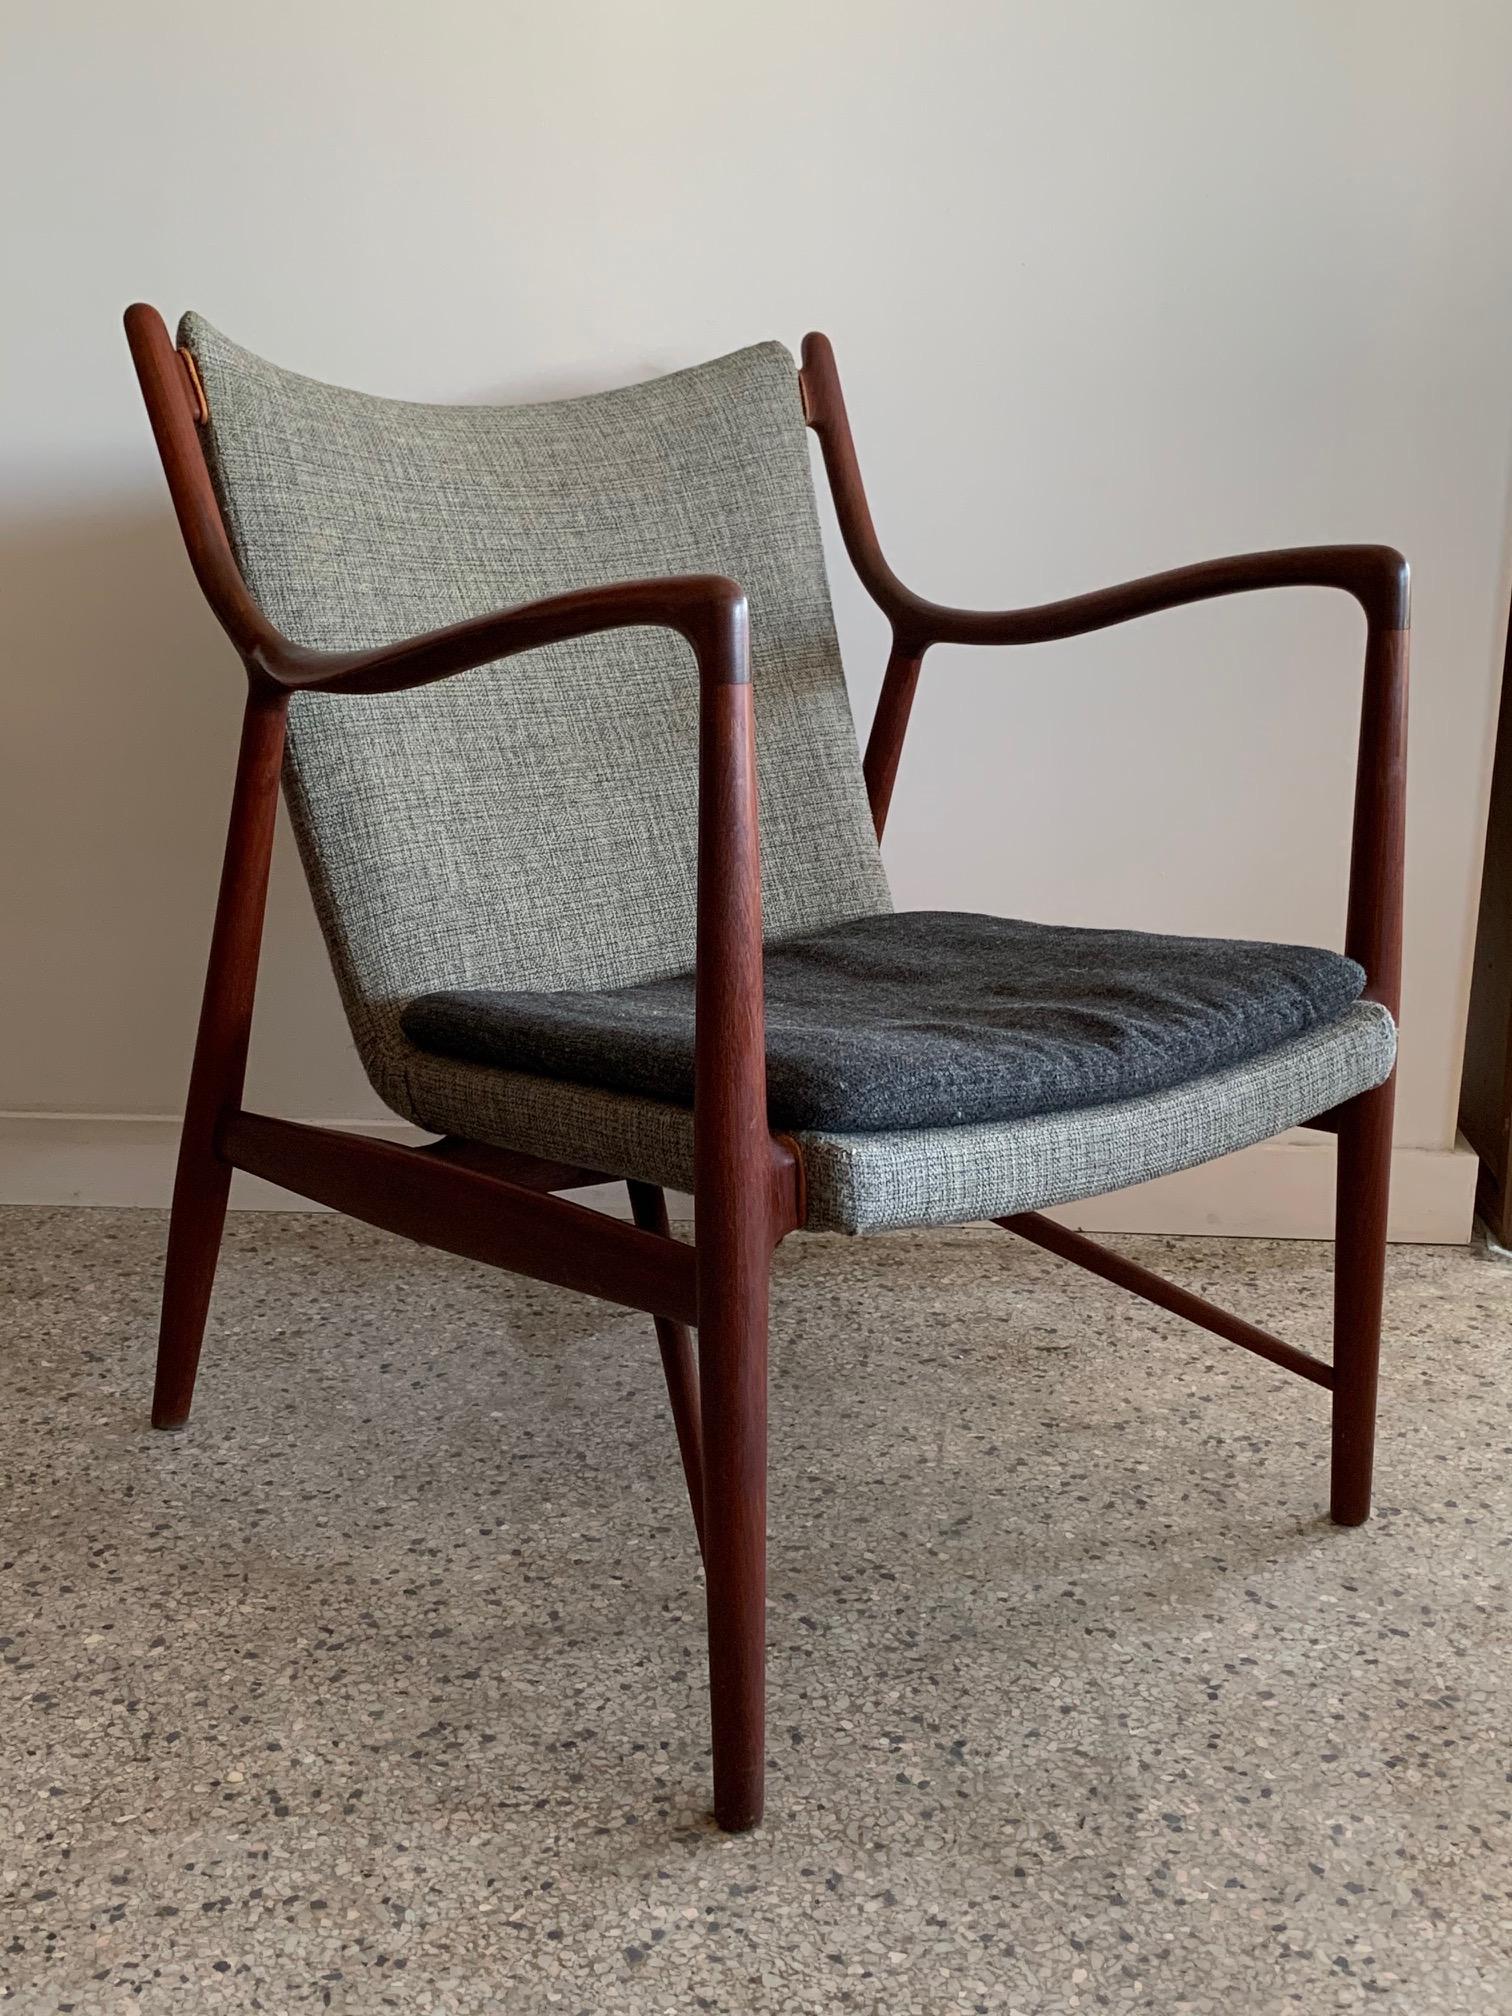 Ein klassischer Original Finn Juhl NV45 Stuhl aus Teakholz von Niels Vodder, Dänemark, ca. 1950er Jahre. Dieses schöne Exemplar behält seine ursprüngliche zweifarbige Wollpolsterung bei. Einer der elegantesten Stühle, die je hergestellt wurden, ist